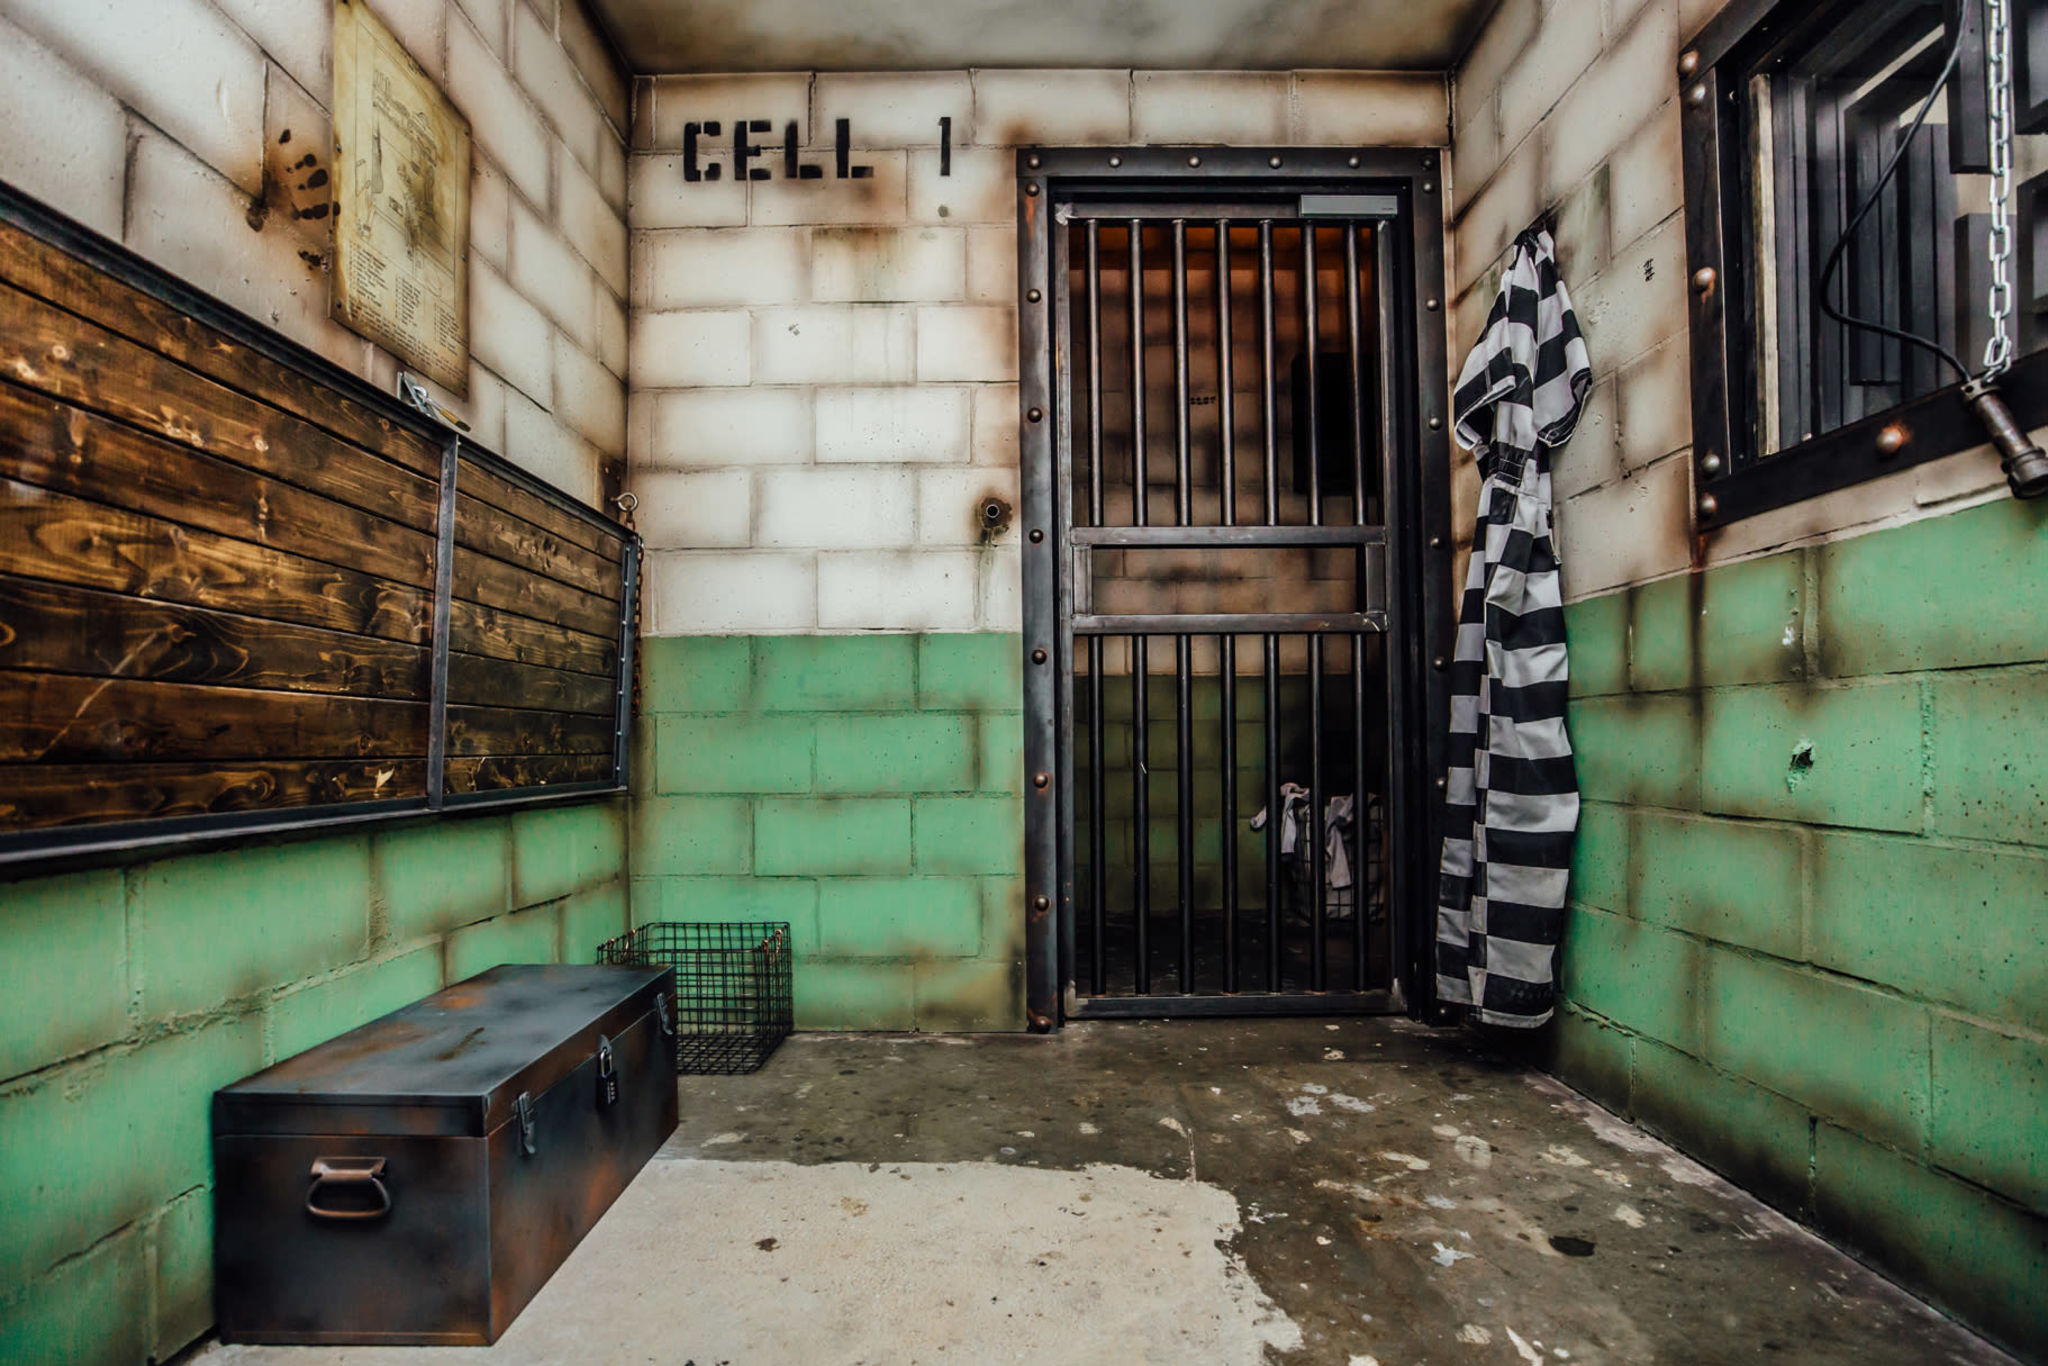 Prison Break' Escape Room Event & More Planned For SXSW – Deadline